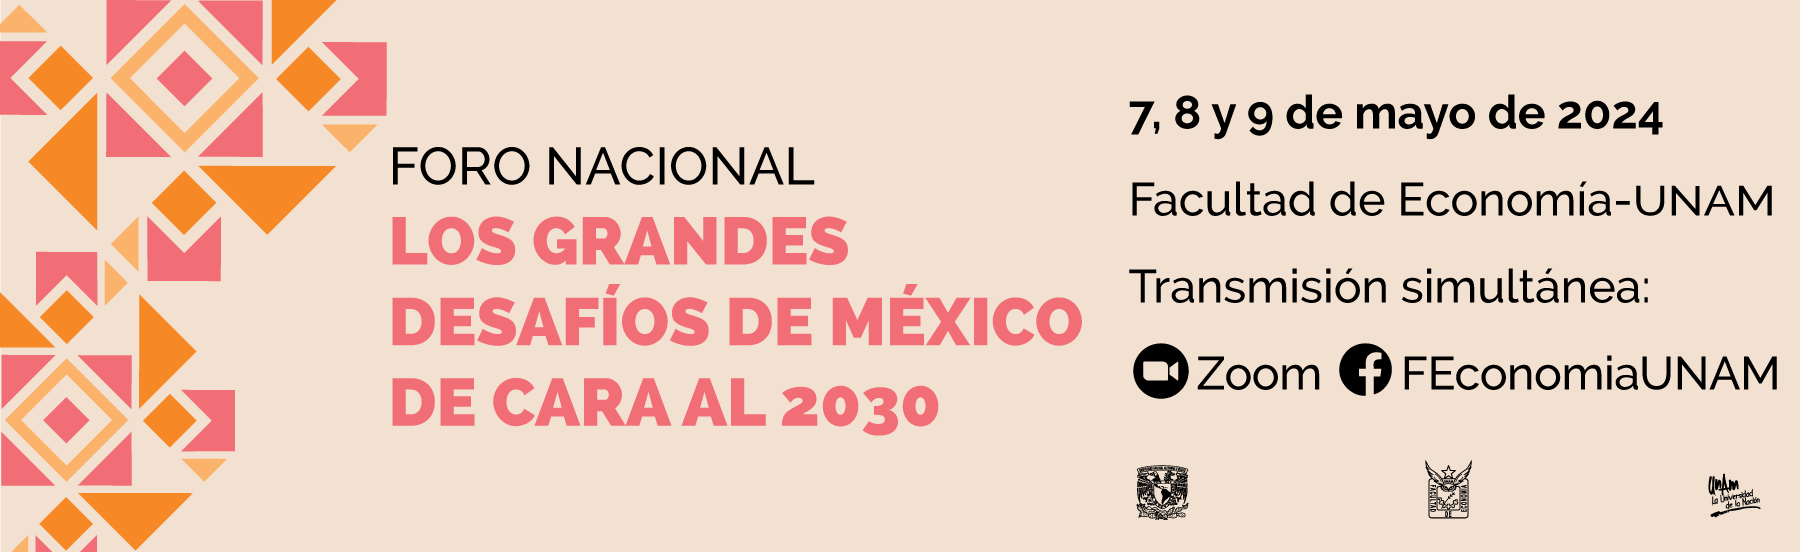 Foro Nacional: Los grandes desafíos de México de cara al 2030, 7, 8 y 9 de mayo de 2024